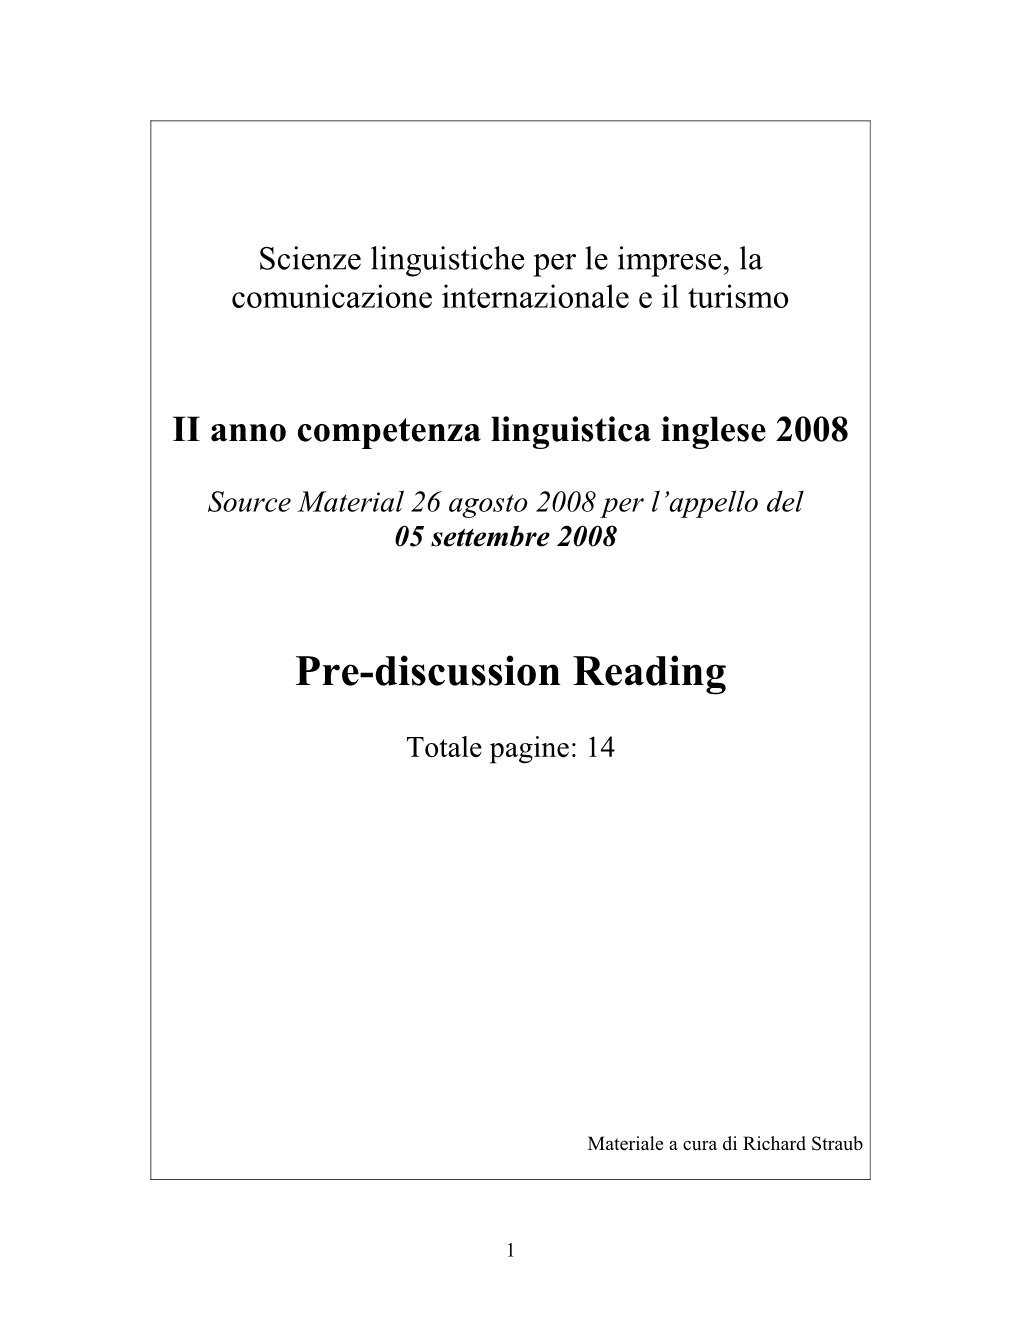 II Anno Competenza Linguistica Inglese 2008